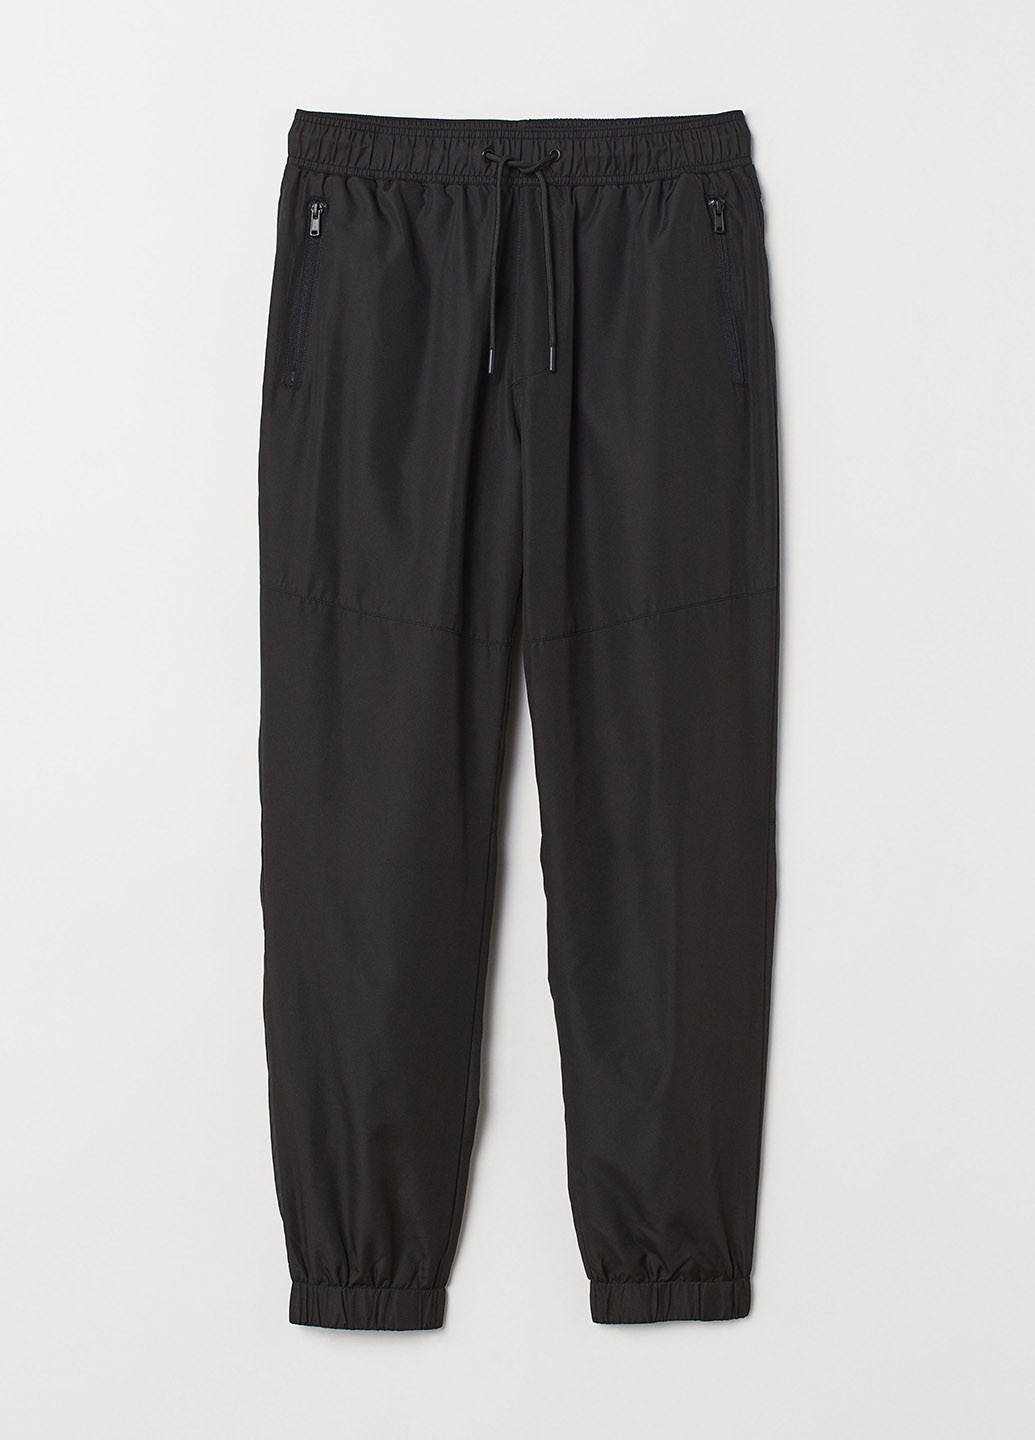 Черные спортивные демисезонные джоггеры брюки H&M